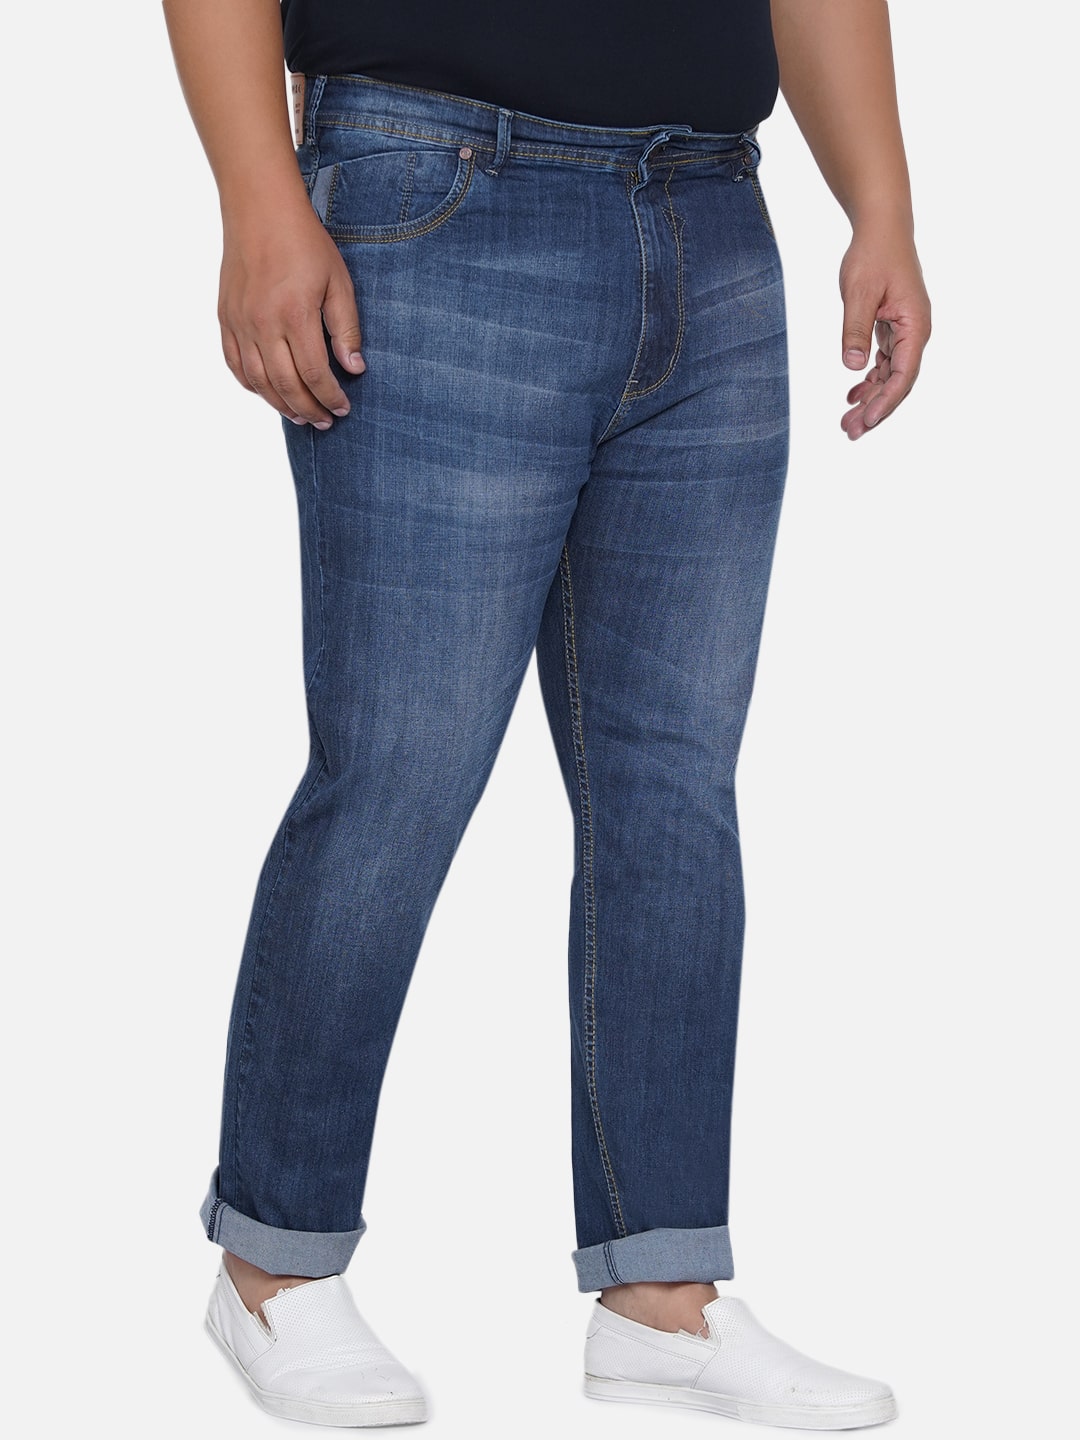 bottomwear/jeans/EJPJ25013/ejpj25013-5.jpg